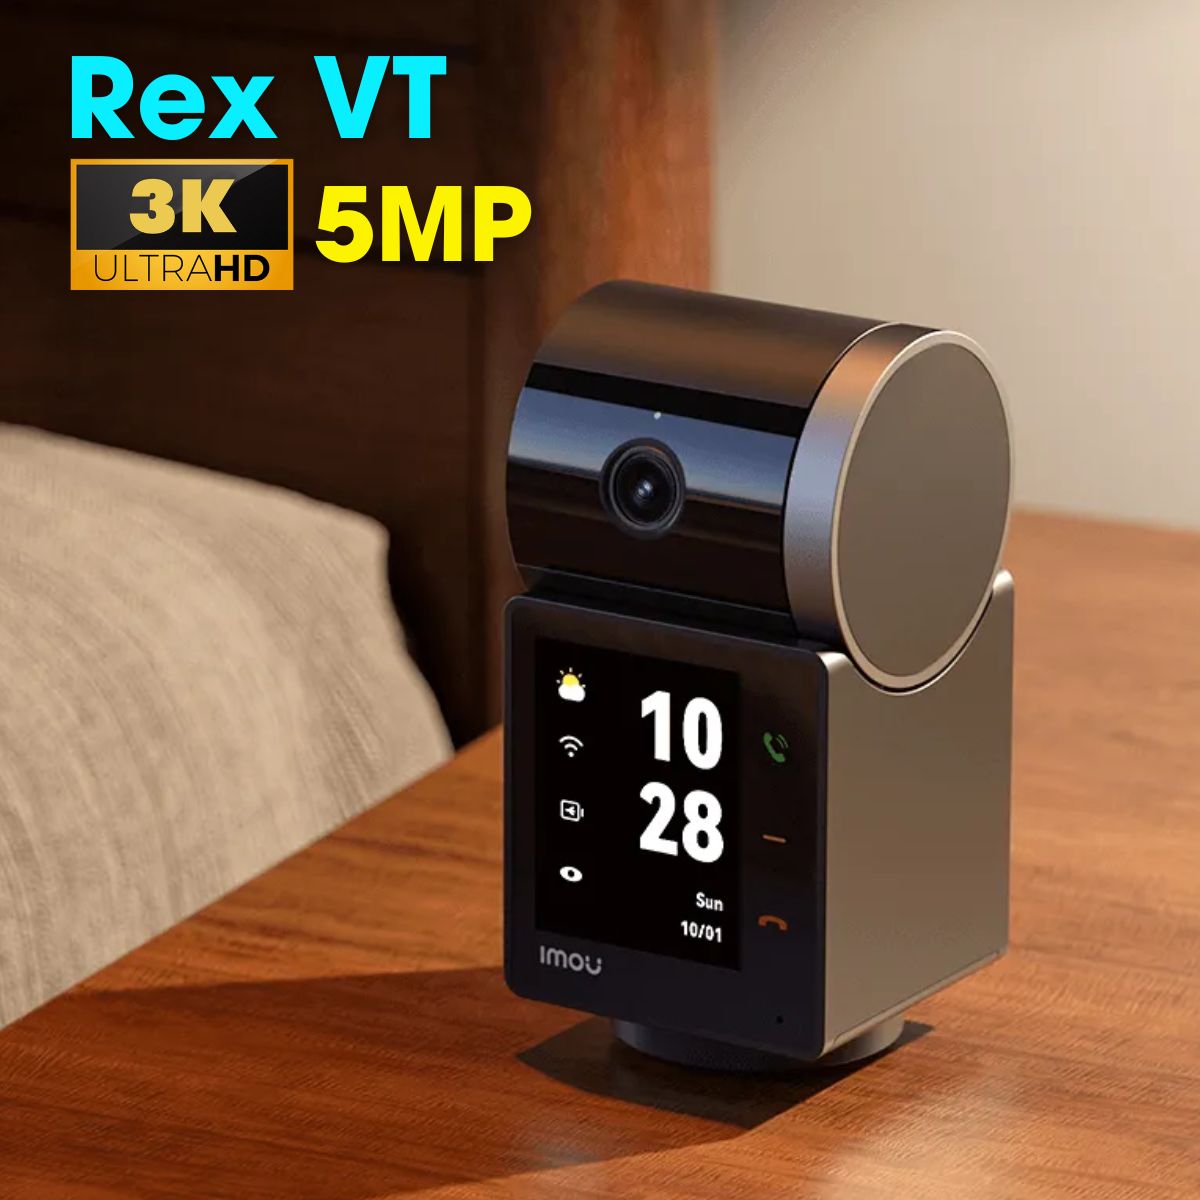 Camera Rex VT Pro gọi điện có hình 5MP Imou IPC-S2VBP-5M0WR Pin 2000mAh, đàm thoại 2 chiều